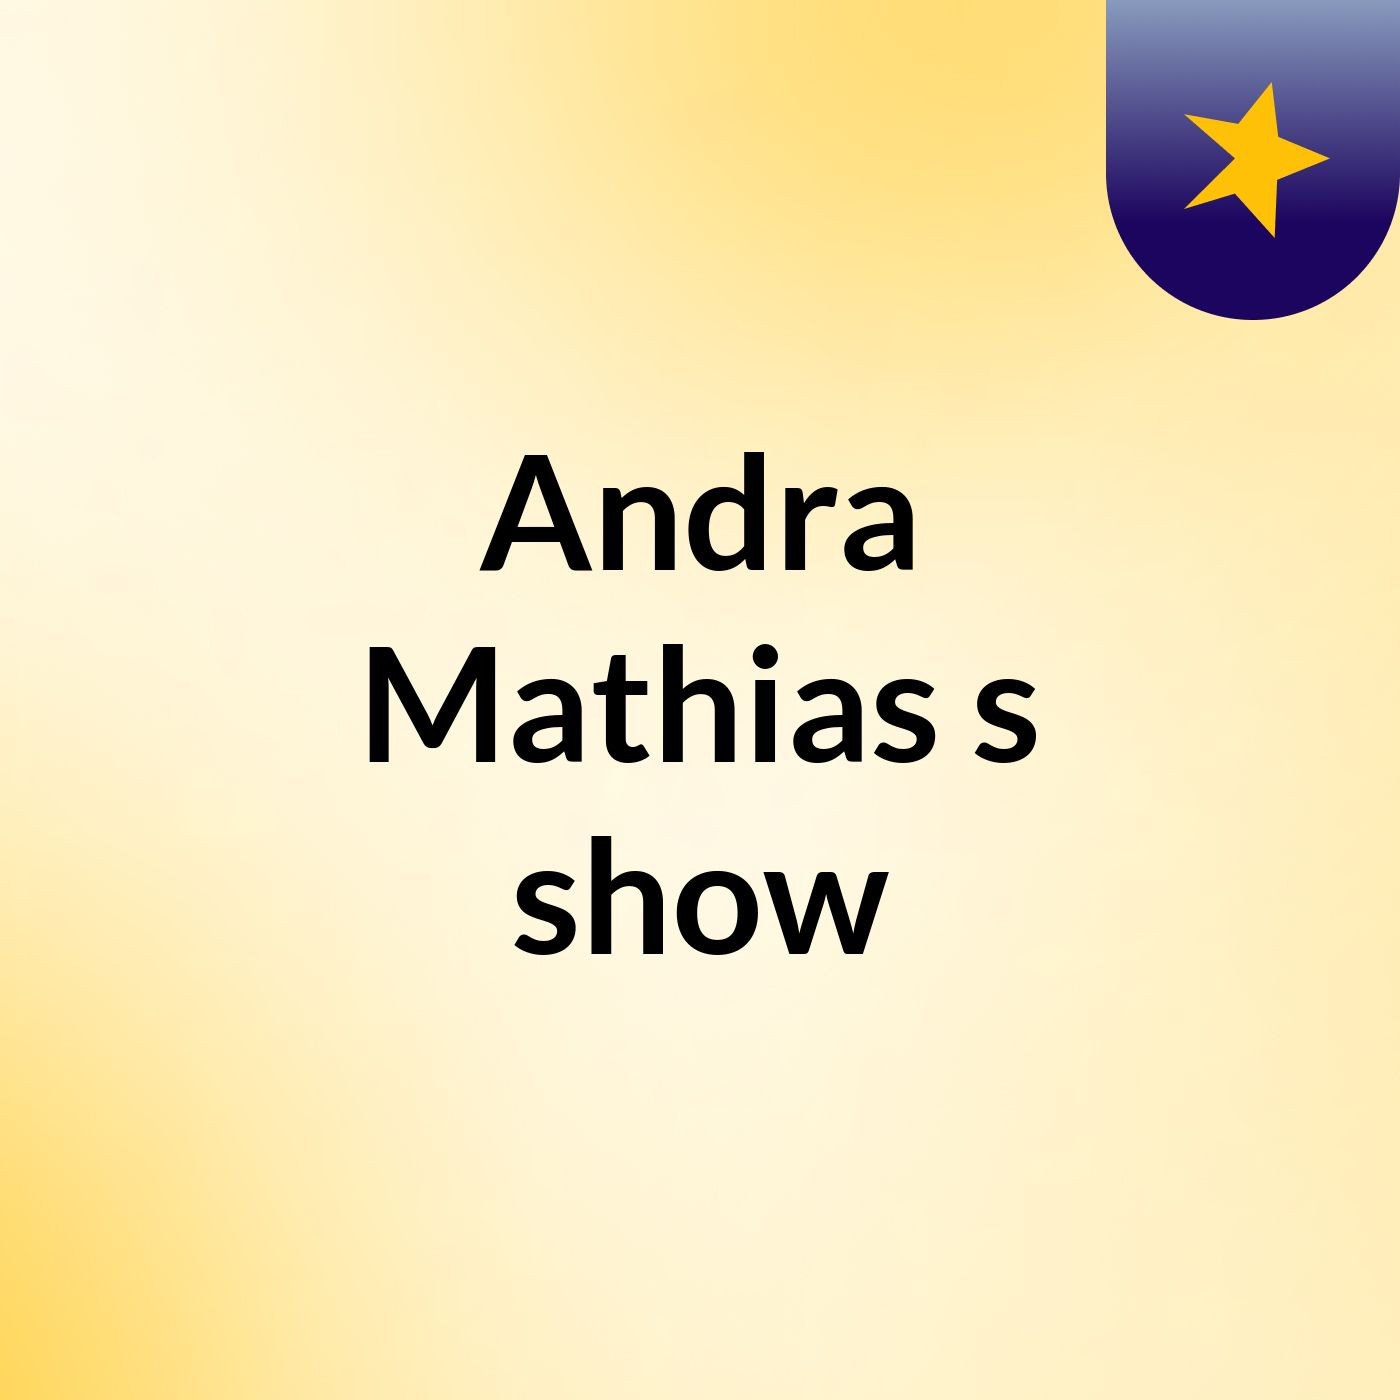 Andra Mathias's show